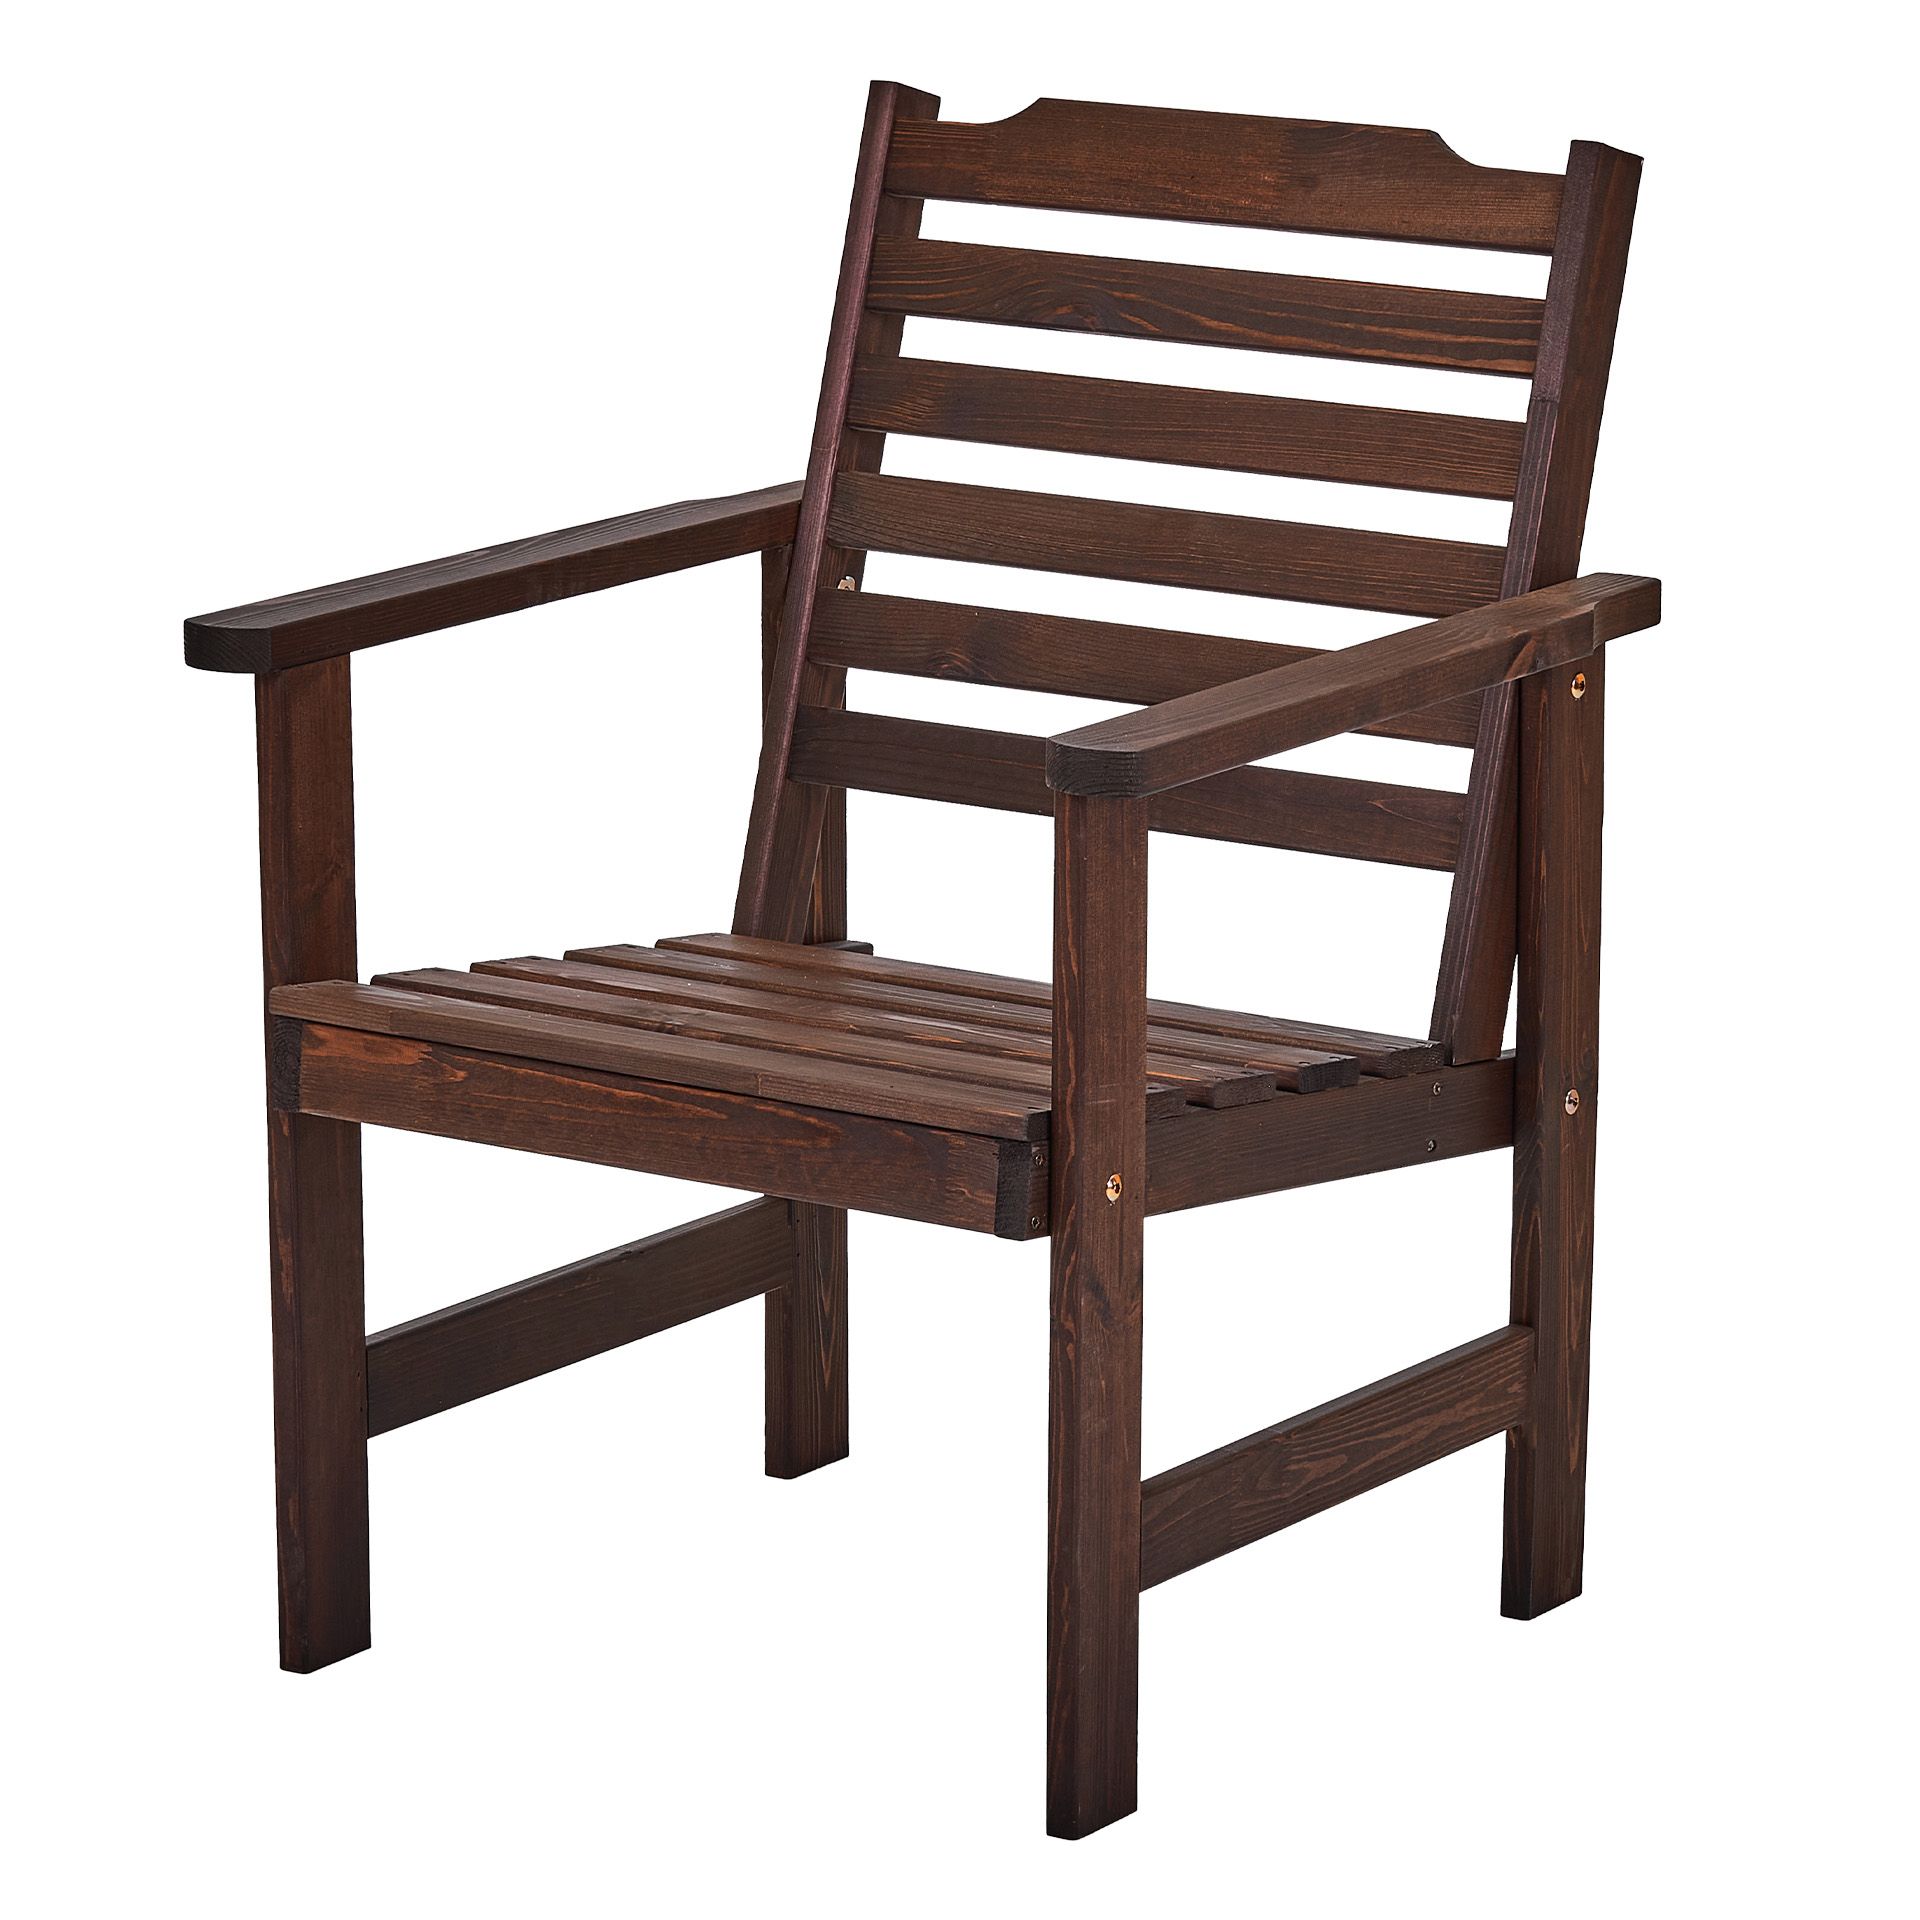 Садовое кресло Interlink Стэнхамн 600281 57х63х84см темно-коричневый, коричневый